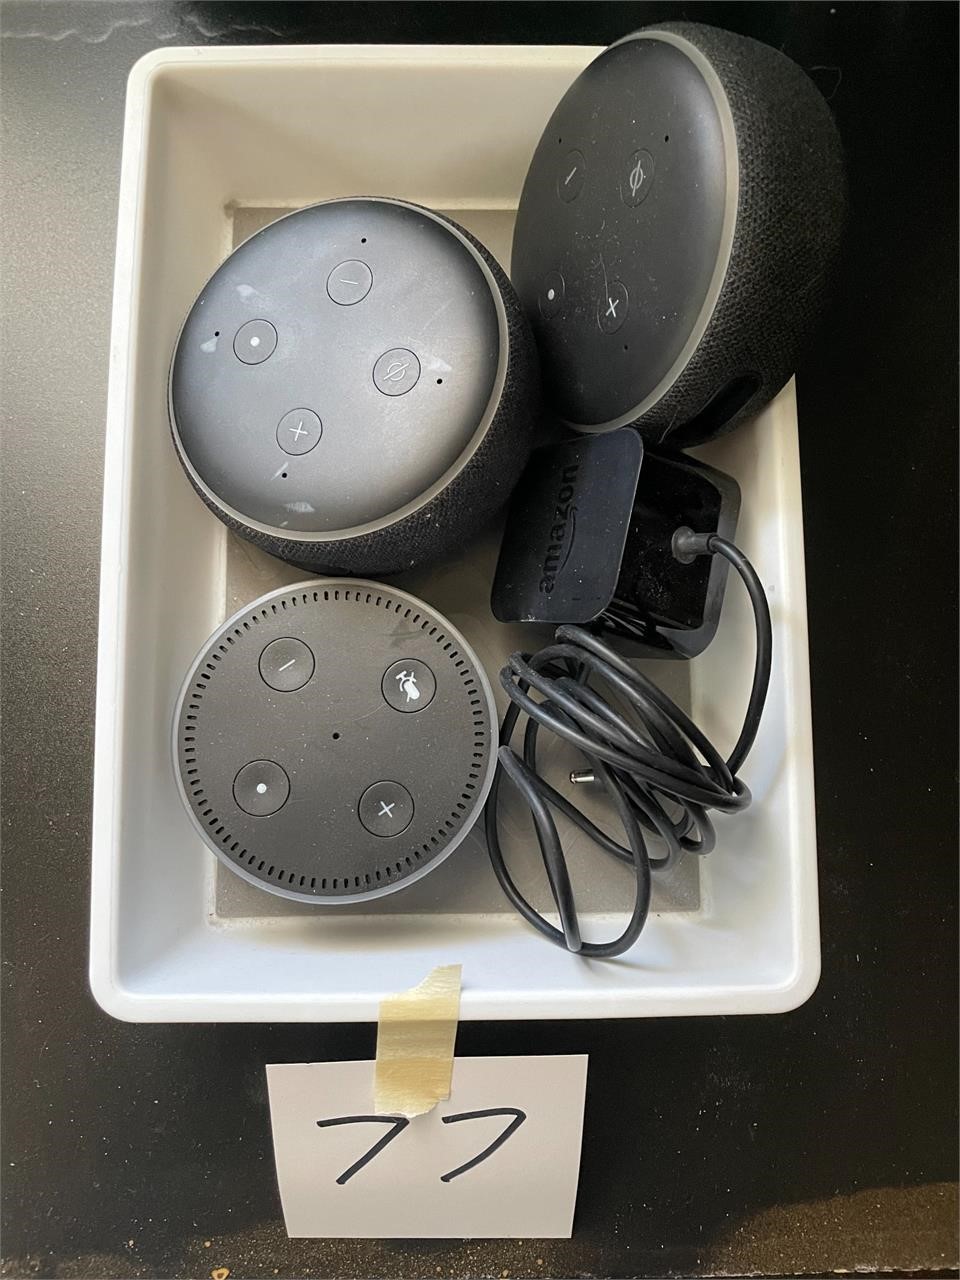 Amazon Speakers/Devices (3)